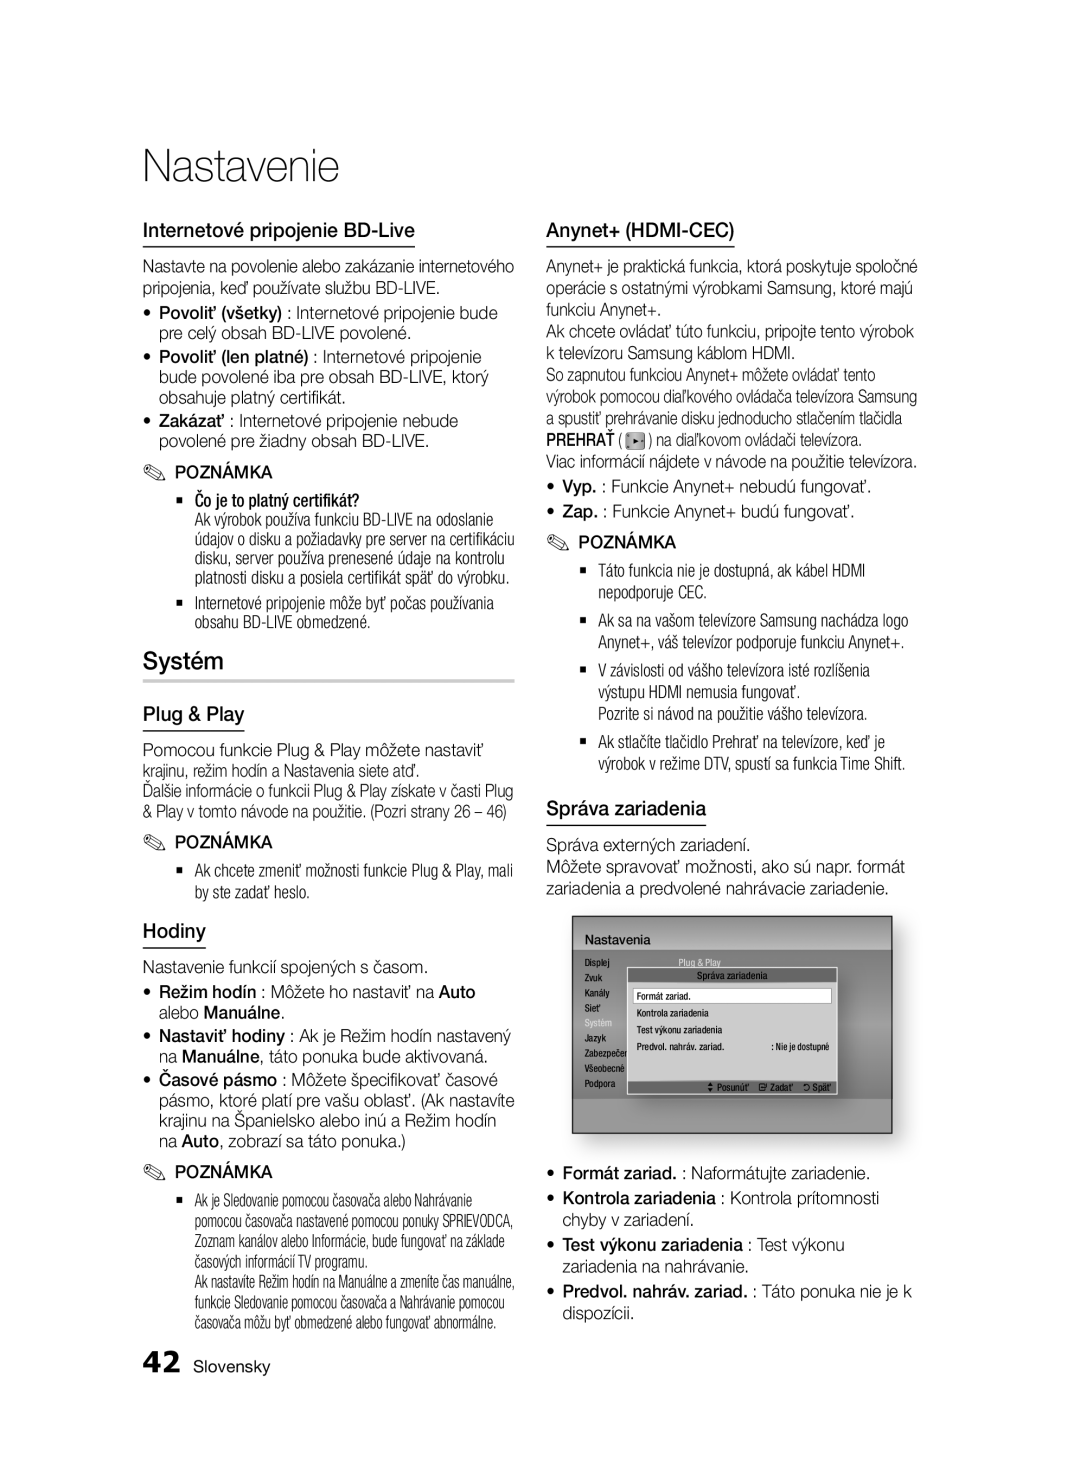 Samsung BD-E6300/EN Internetové pripojenie BD-Live, Anynet+ HDMI-CEC, Správa zariadenia, Nastavenie, Systém, Plug & Play 